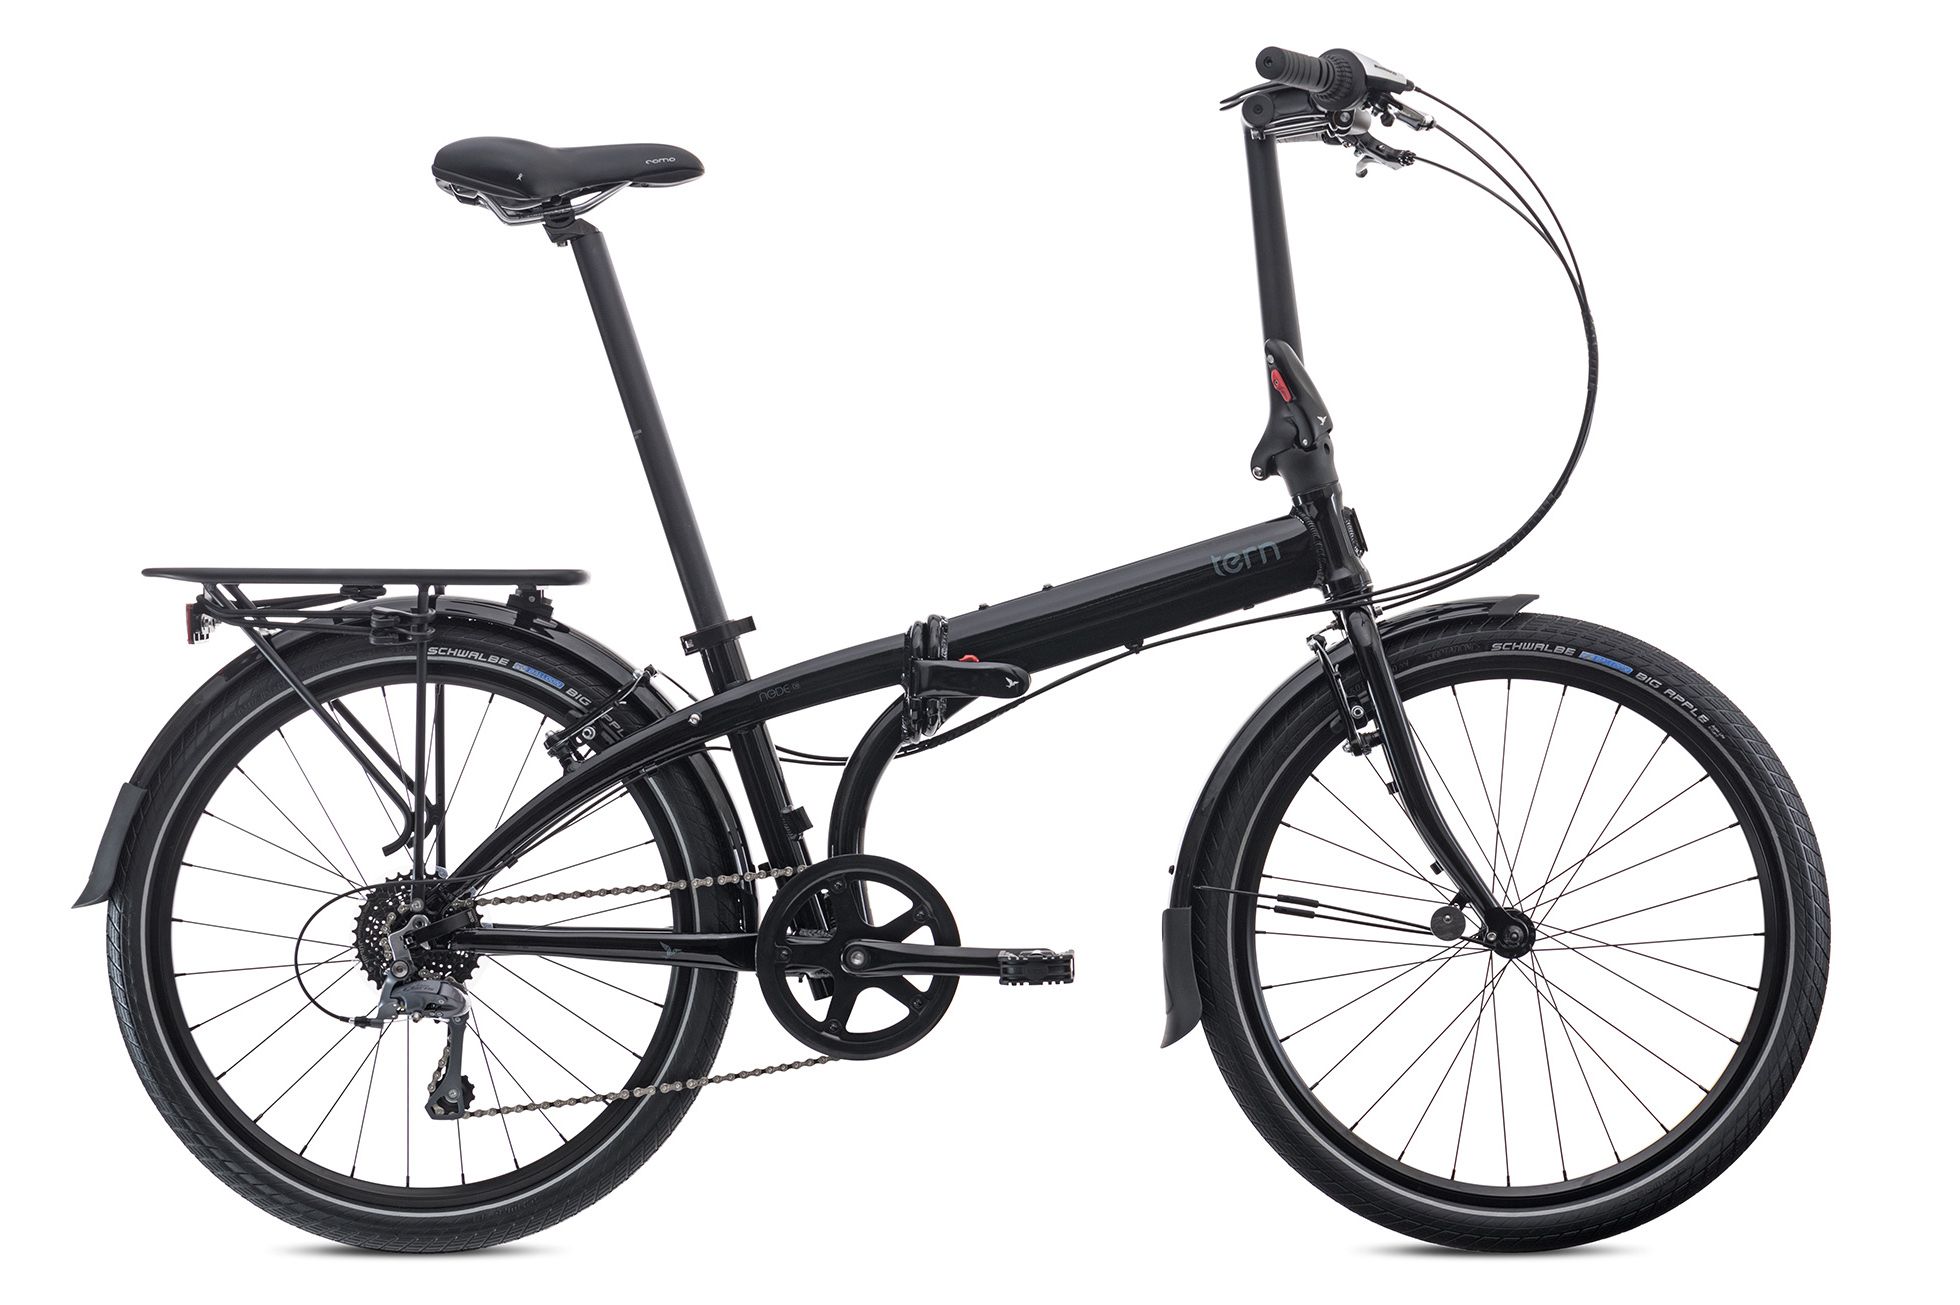  Отзывы о Складном велосипеде Tern Node D8 2016